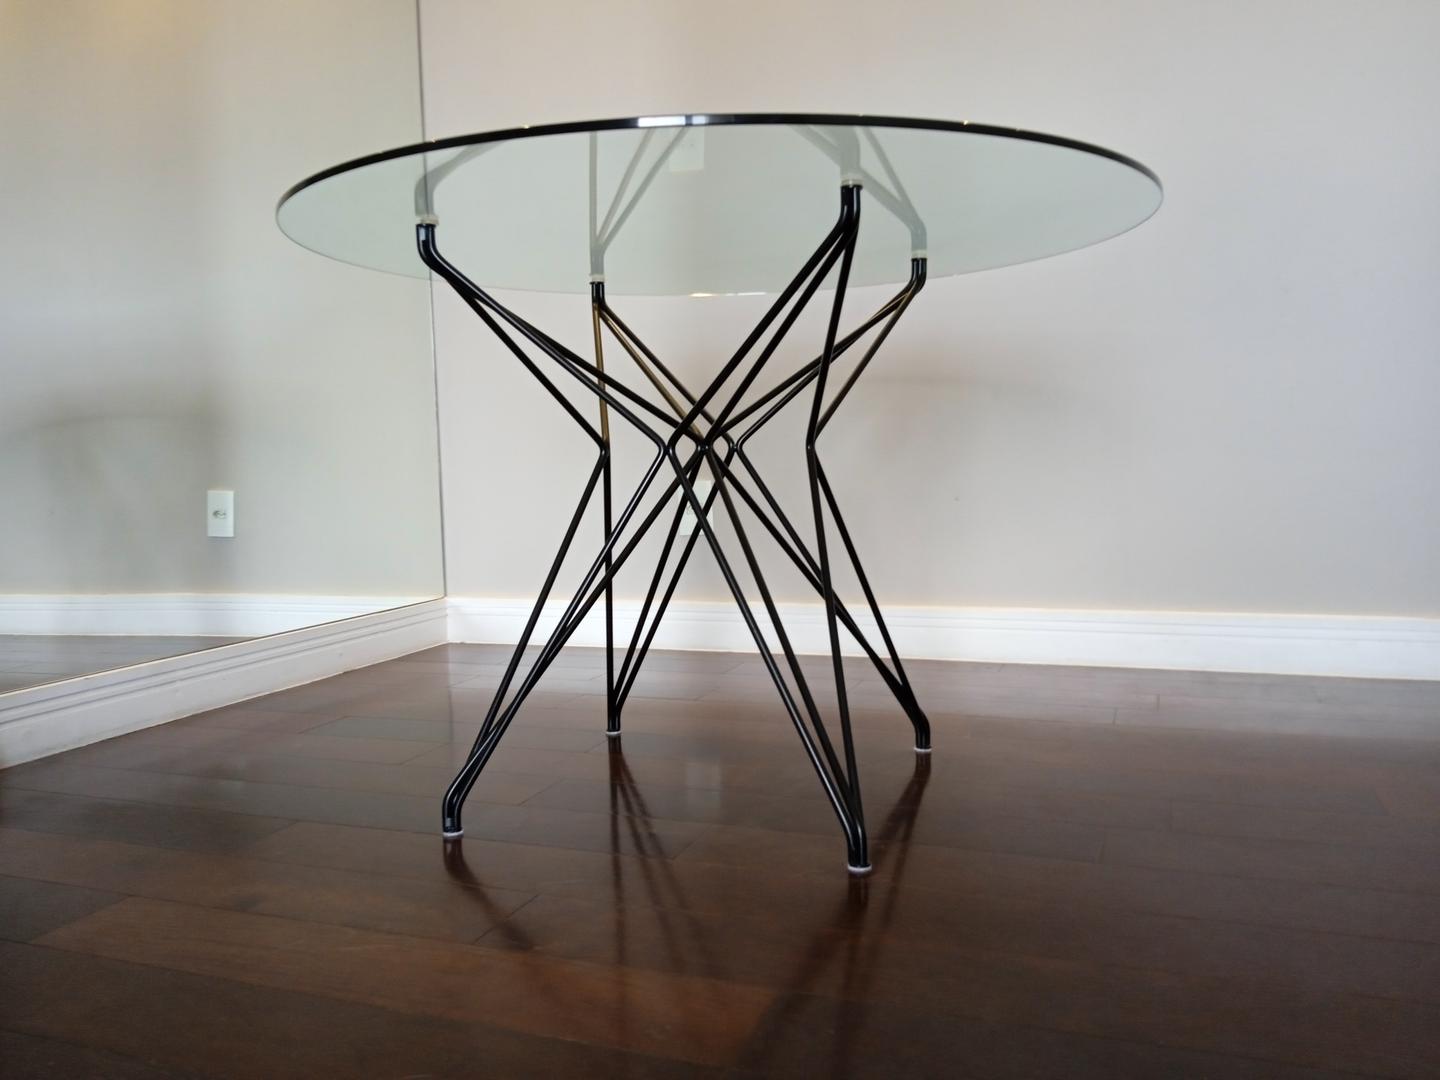 Mesa de jantar em Aço / Vidro Cinza 75 cm x 110 cm x 110 cm